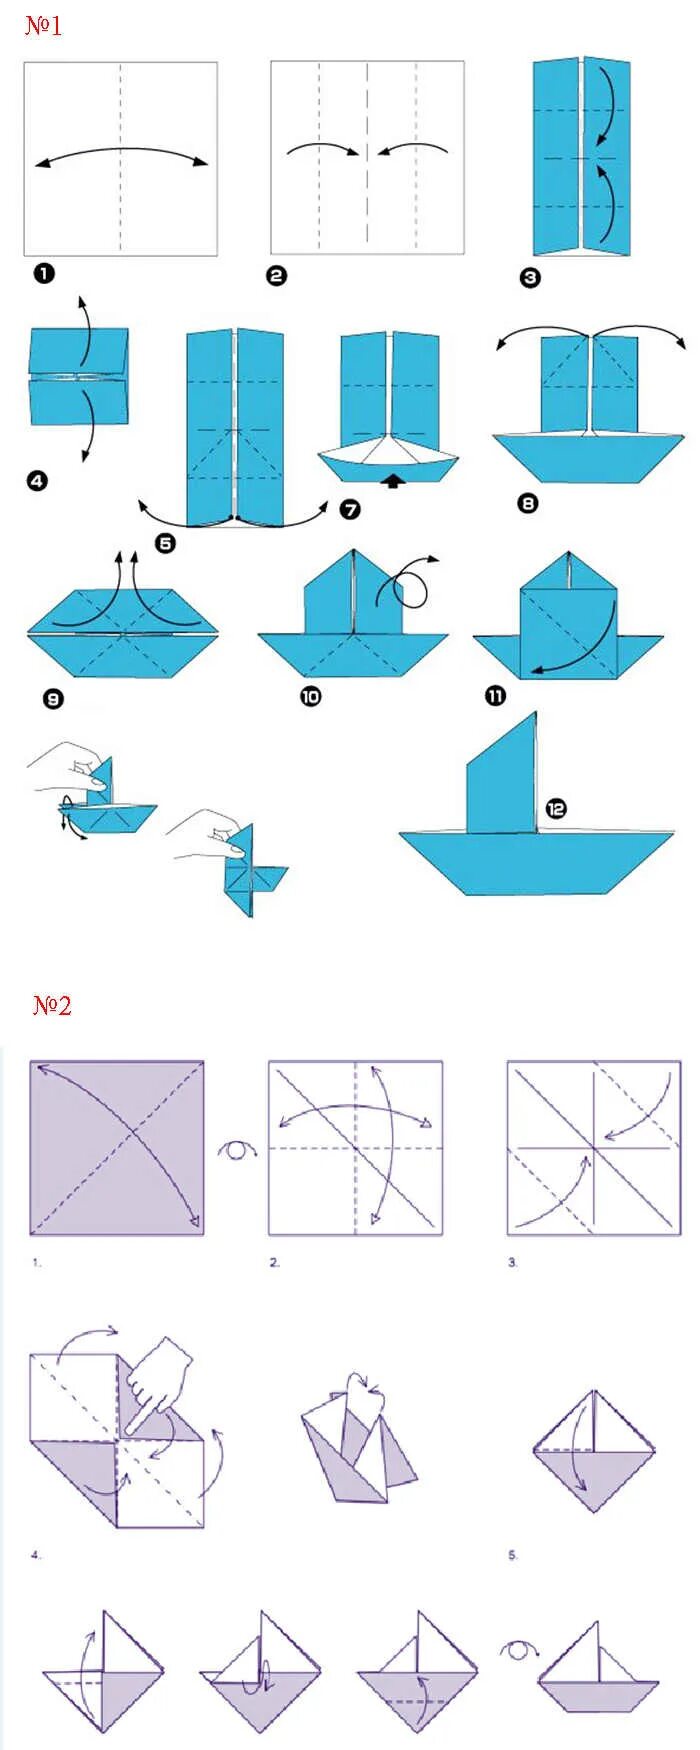 Как сделать кораблик поэтапно. Оригами из бумаги схемы для начинающих кораблик. Как сделать кораблик из бумаги пошаговая инструкция. Как делается кораблик из бумаги а4. Оригами из бумаги кораблик схема поэтапно для детей.